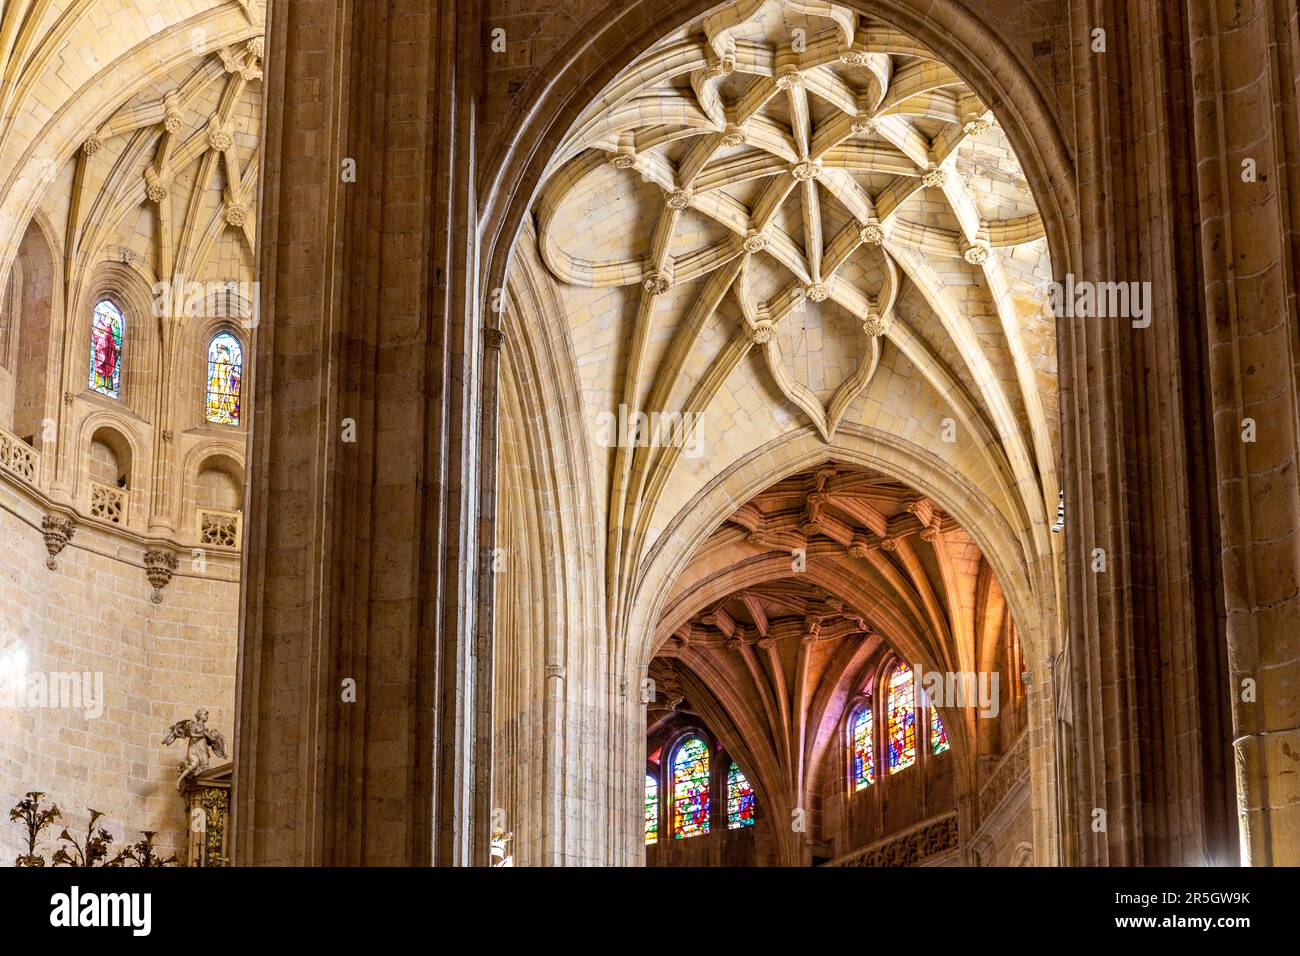 Segovia, Spanien, 03.10.21. Segovia Kathedrale mit Blick auf die dekorativen gotischen Gewölbe mit Blumenschnitzereien, Buntglasfenstern und Segovia. Stockfoto